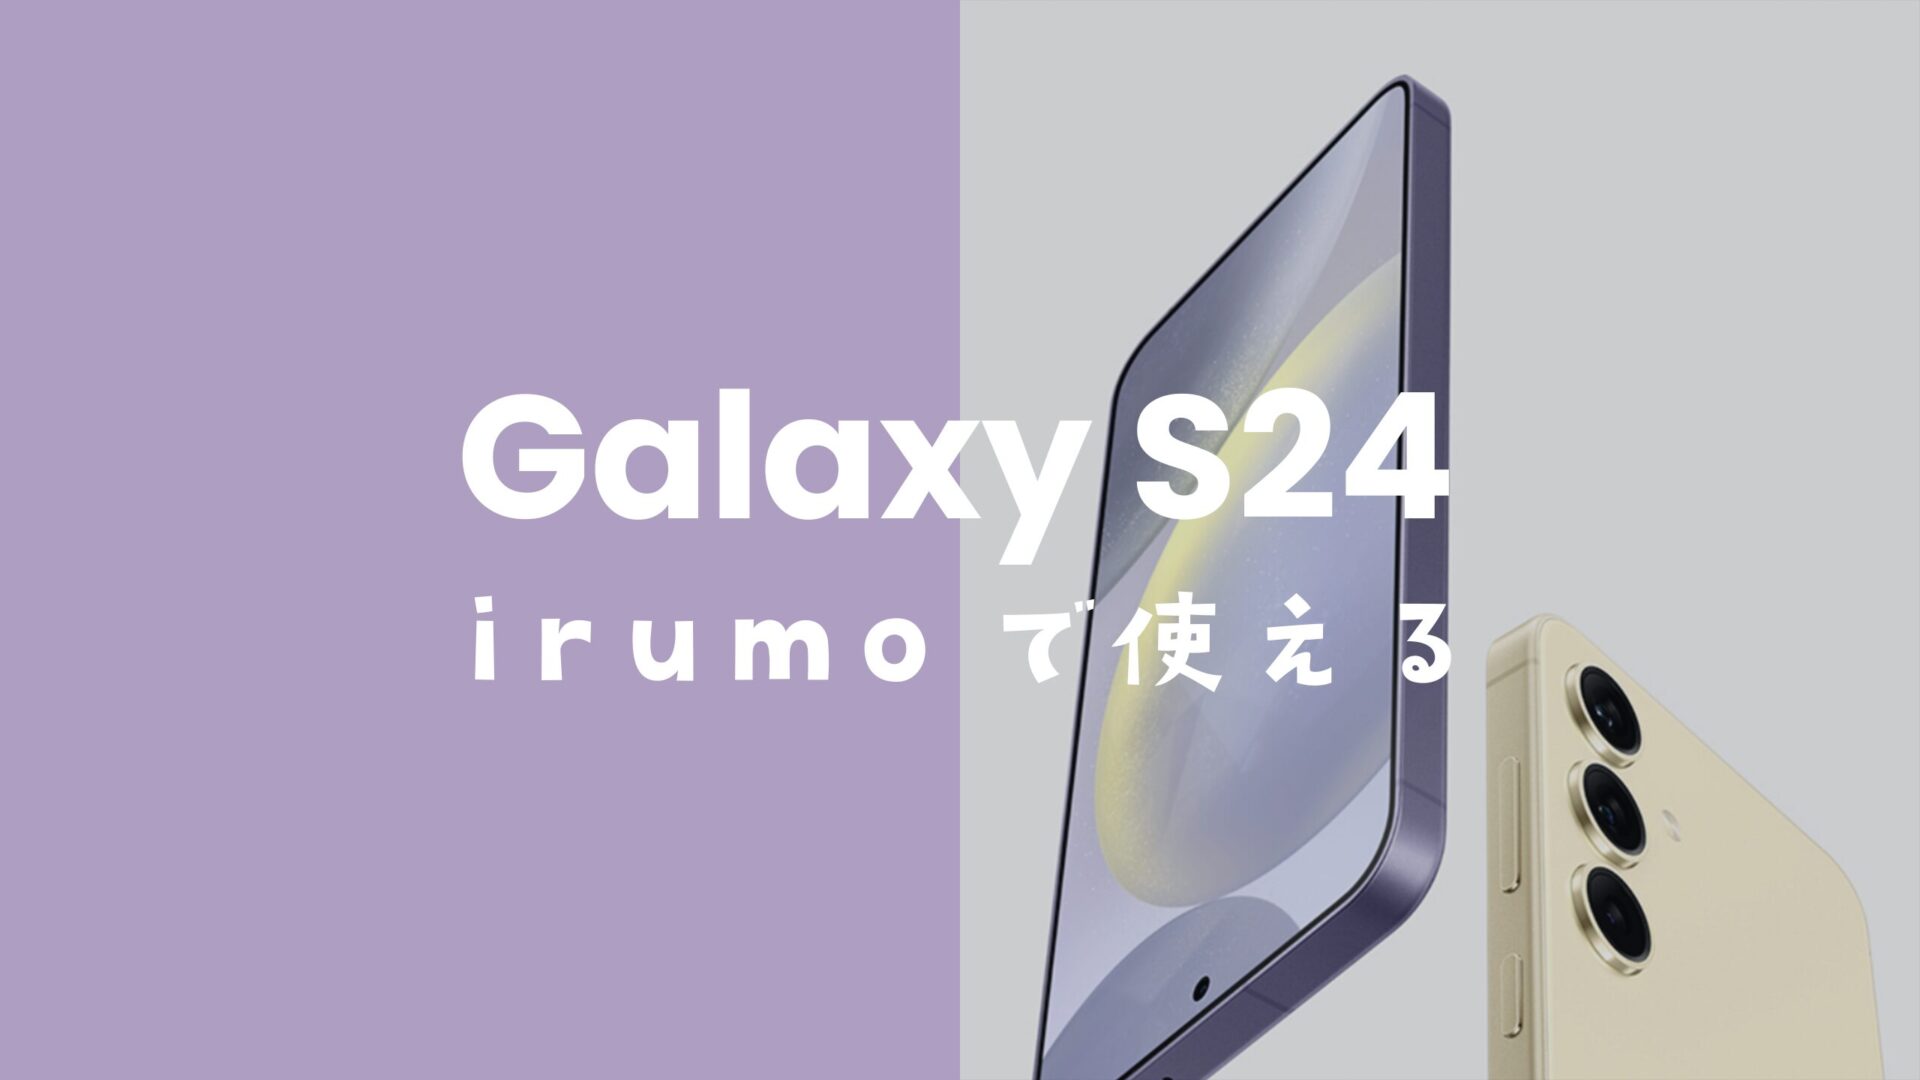 irumo(イルモ)でGalaxy S24は使える対応機種。【ギャラクシーS24】のサムネイル画像